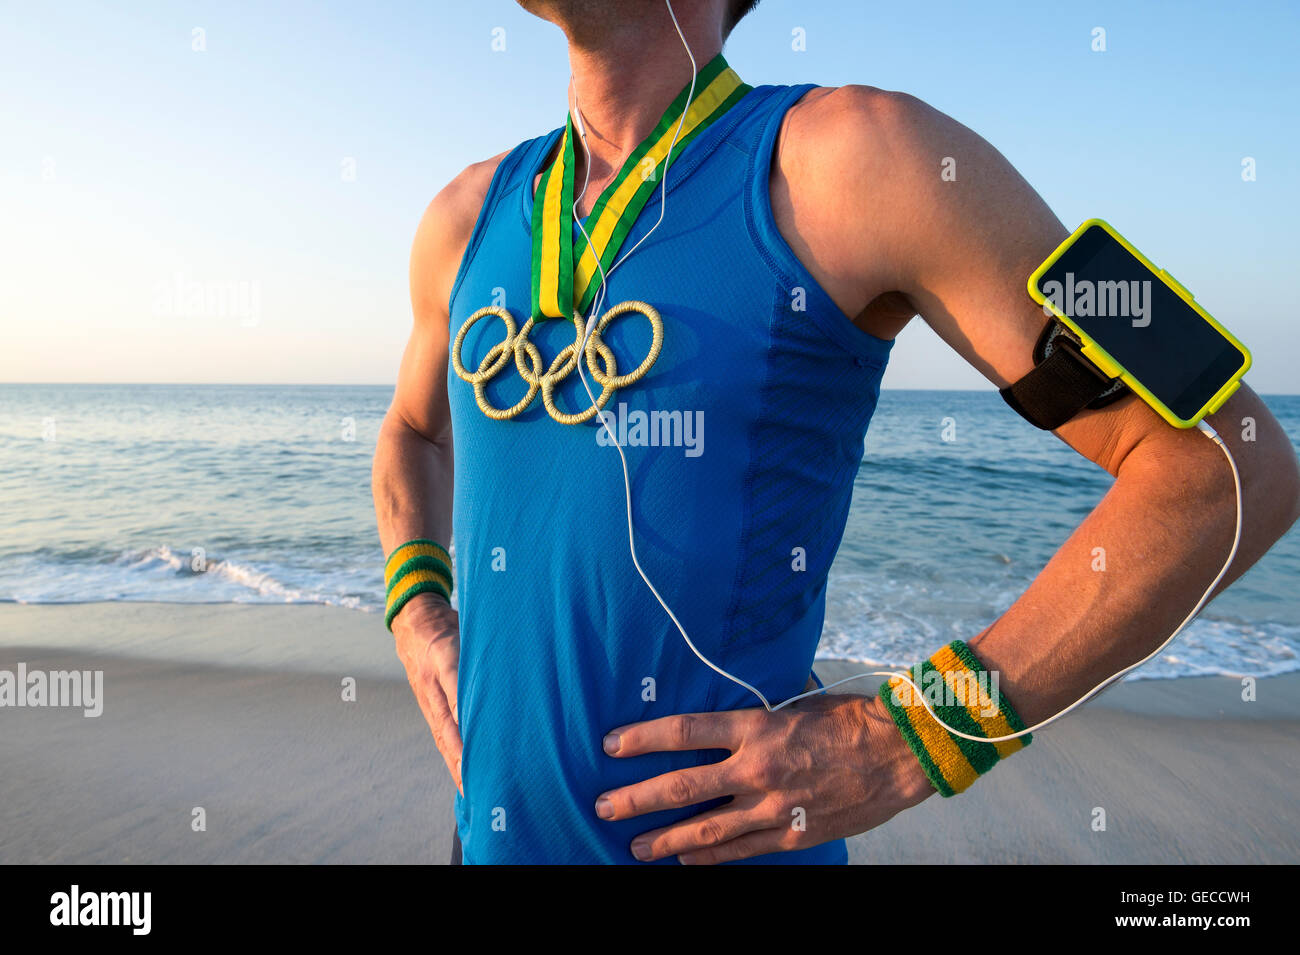 RIO DE JANEIRO - 10. März 2016: Sportler der Olympischen Ringe gold Medaillen und Sport Armband steht an einem Sonnenaufgang Strand tragen. Stockfoto